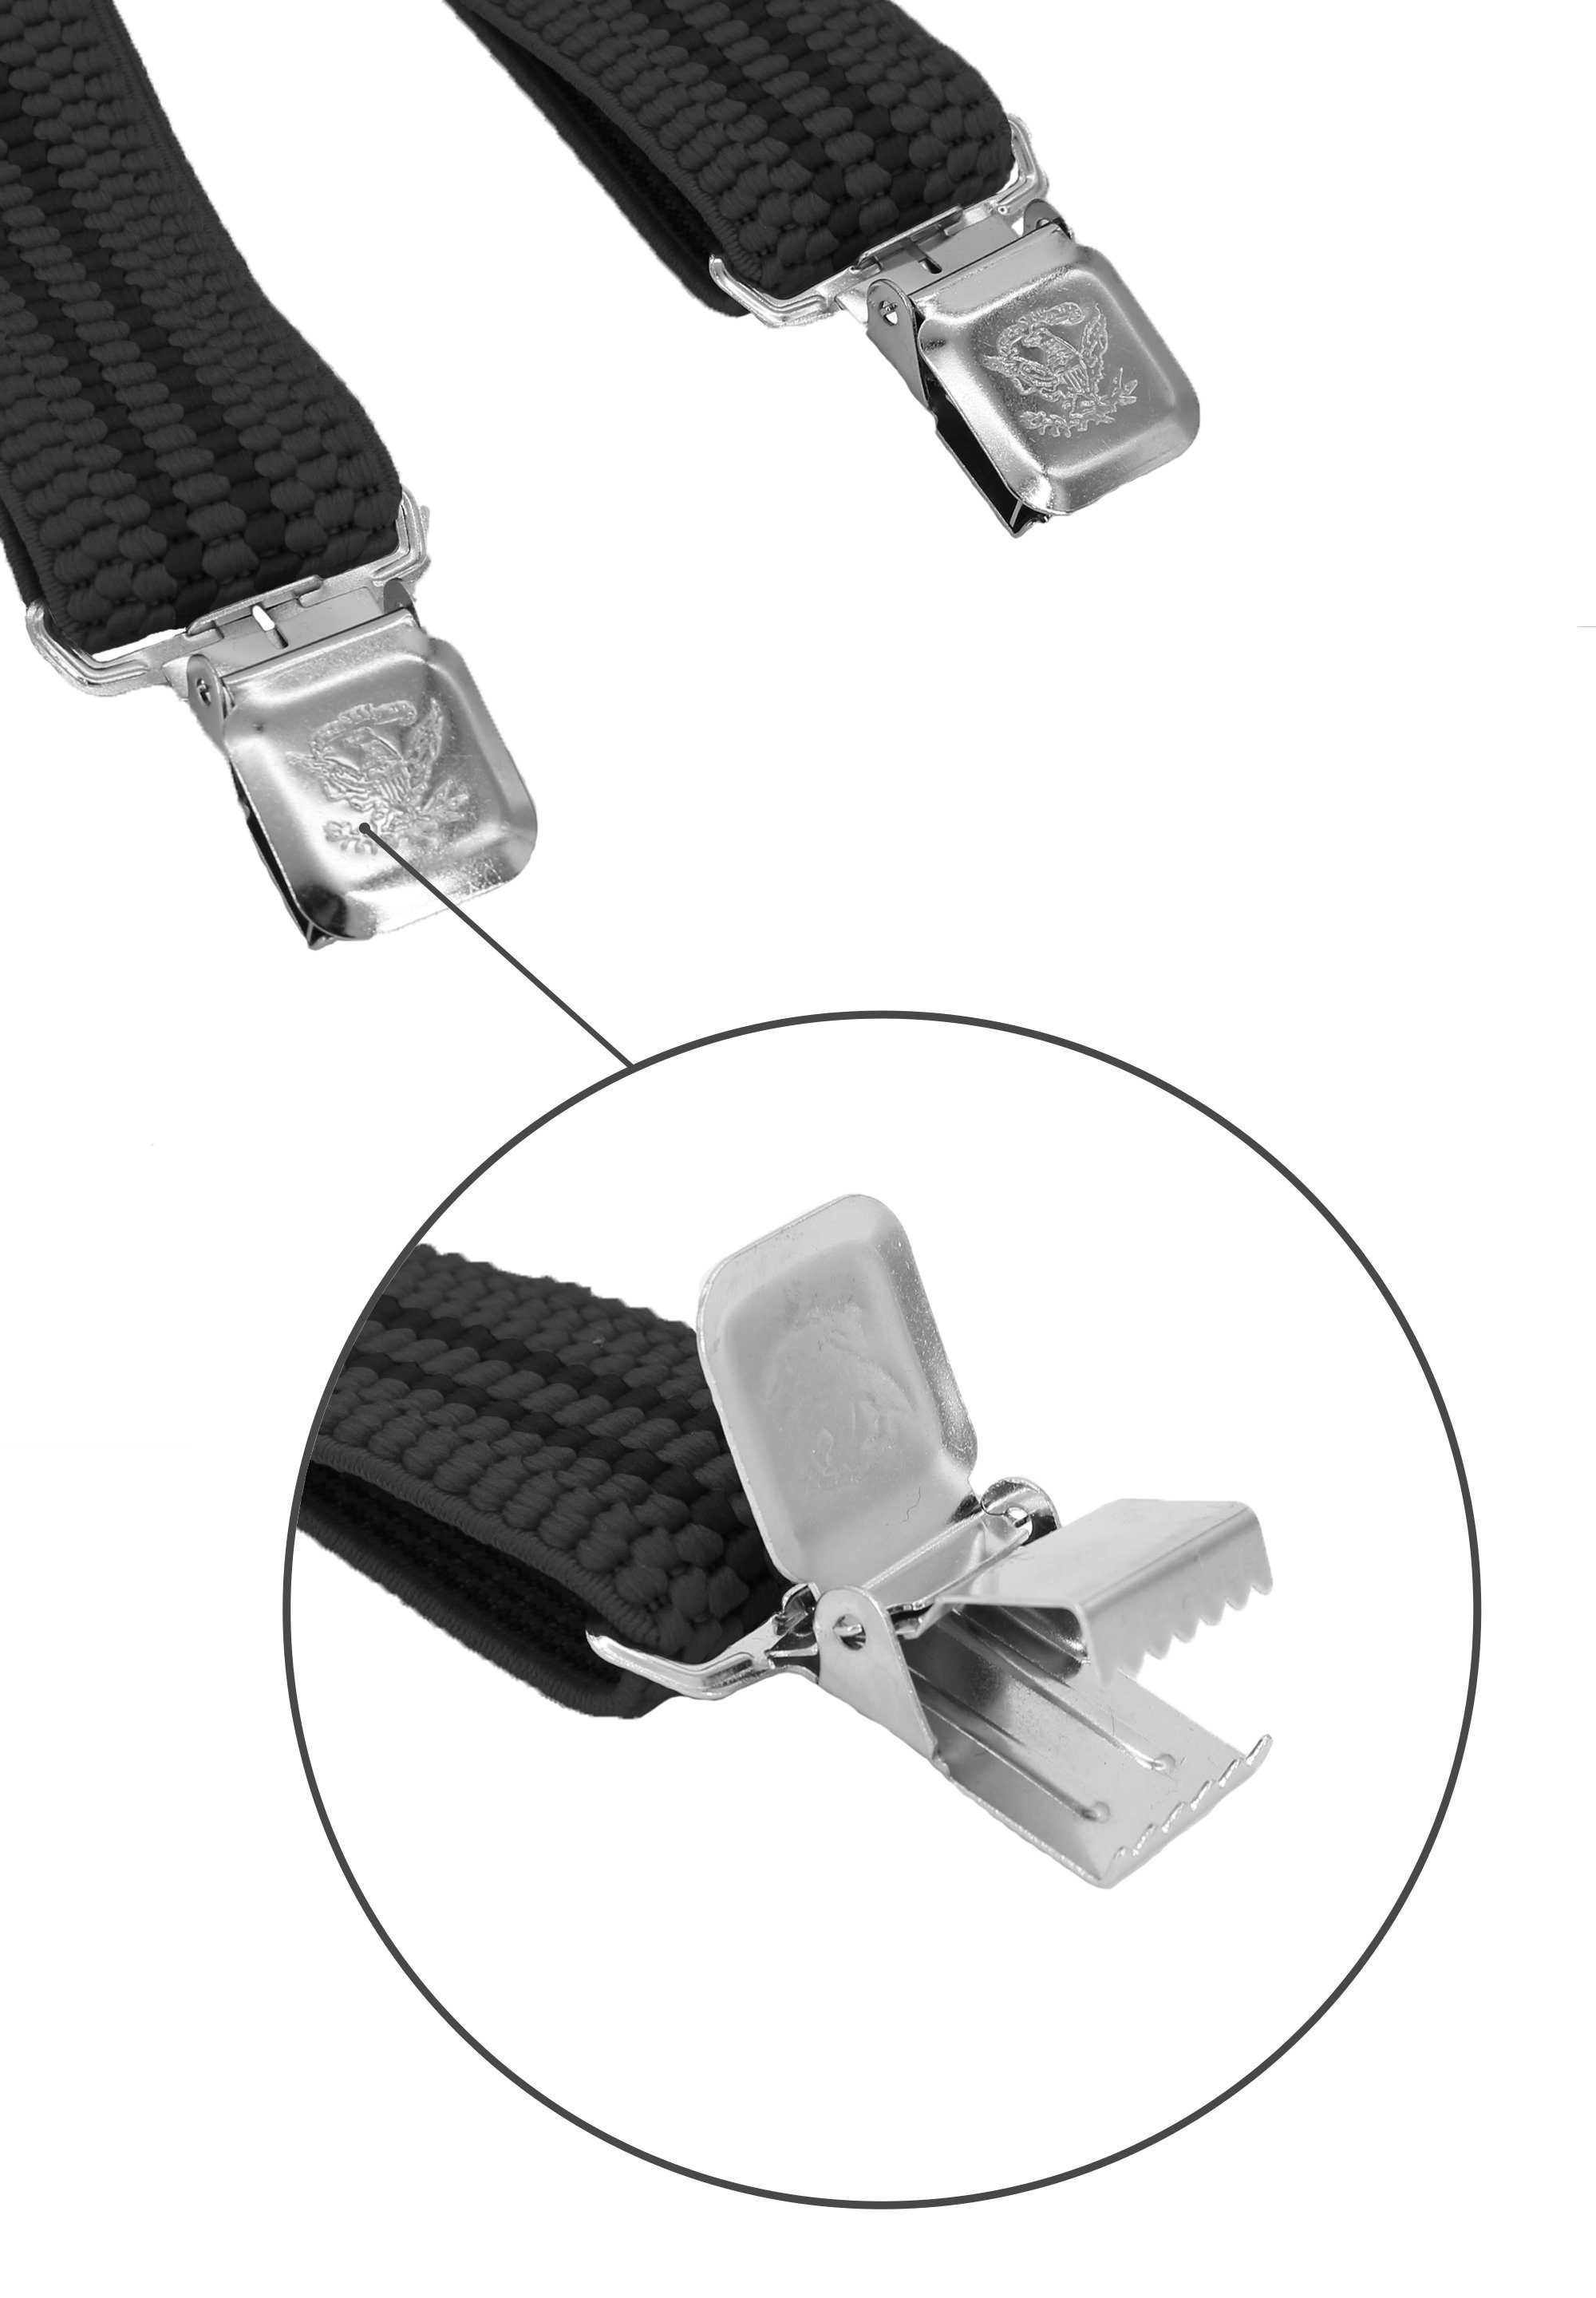 Breites Grau Clipverschluss, schwarzen verstellbar mit X-Design Streifen 4cm Fabio Farini starken Hosenträger (schwarze Streifen) mit Grau extra